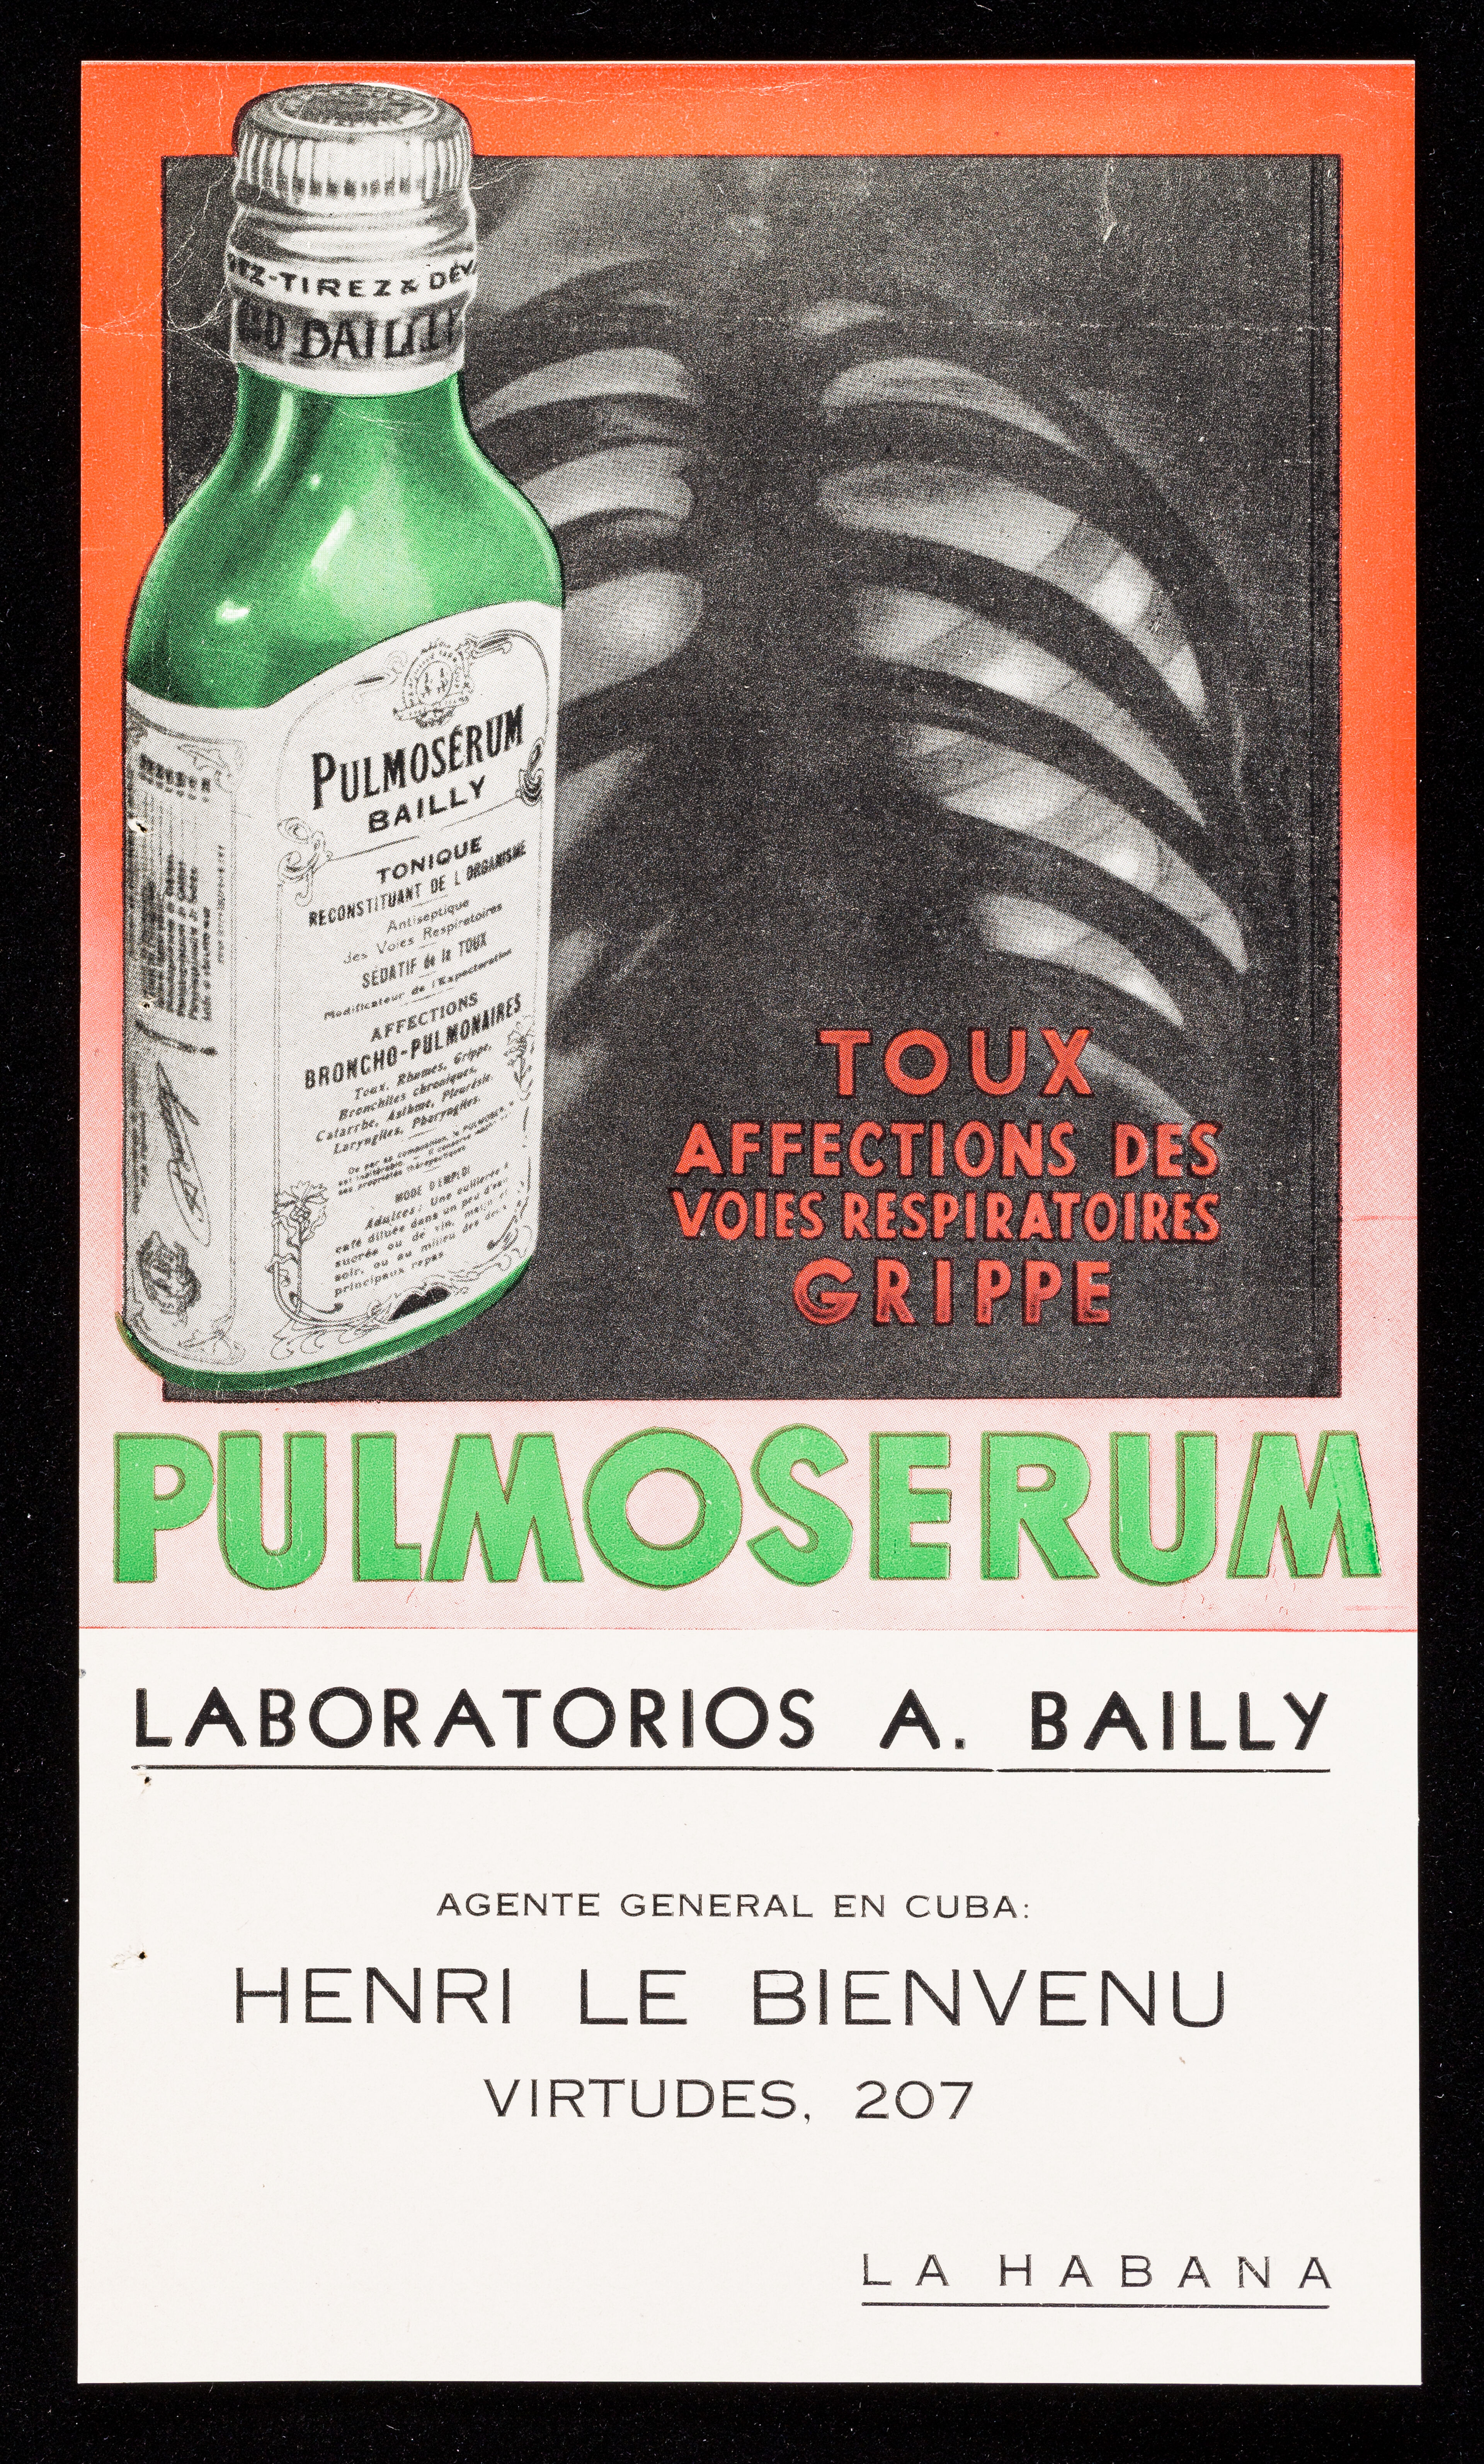 Toux, affections des voies respiratoires, grippe : Pulmoserum / Laboratorios A. Bailly ; agente general en Cuba Henri Le Bienvenu.